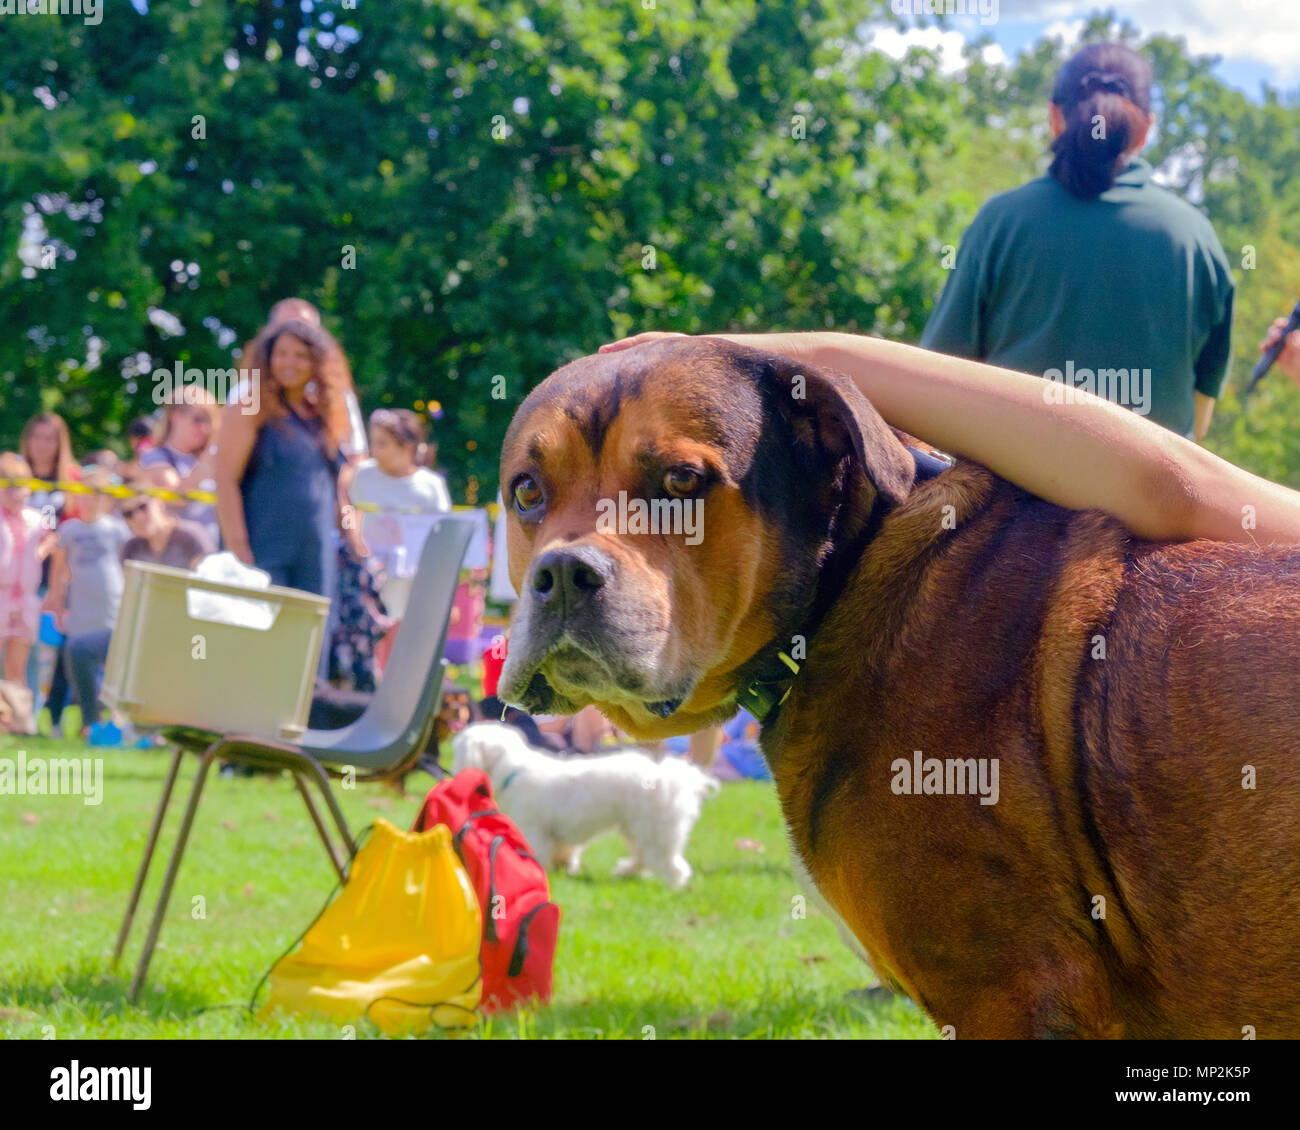 Brauner Hund, Dog Show in Kanonen Park, Edgware, North London, gestreichelt, während der jährliche Familientag. Bäume, die Menschen und die Hunde in den Hintergrund. Landschaft Stockfoto